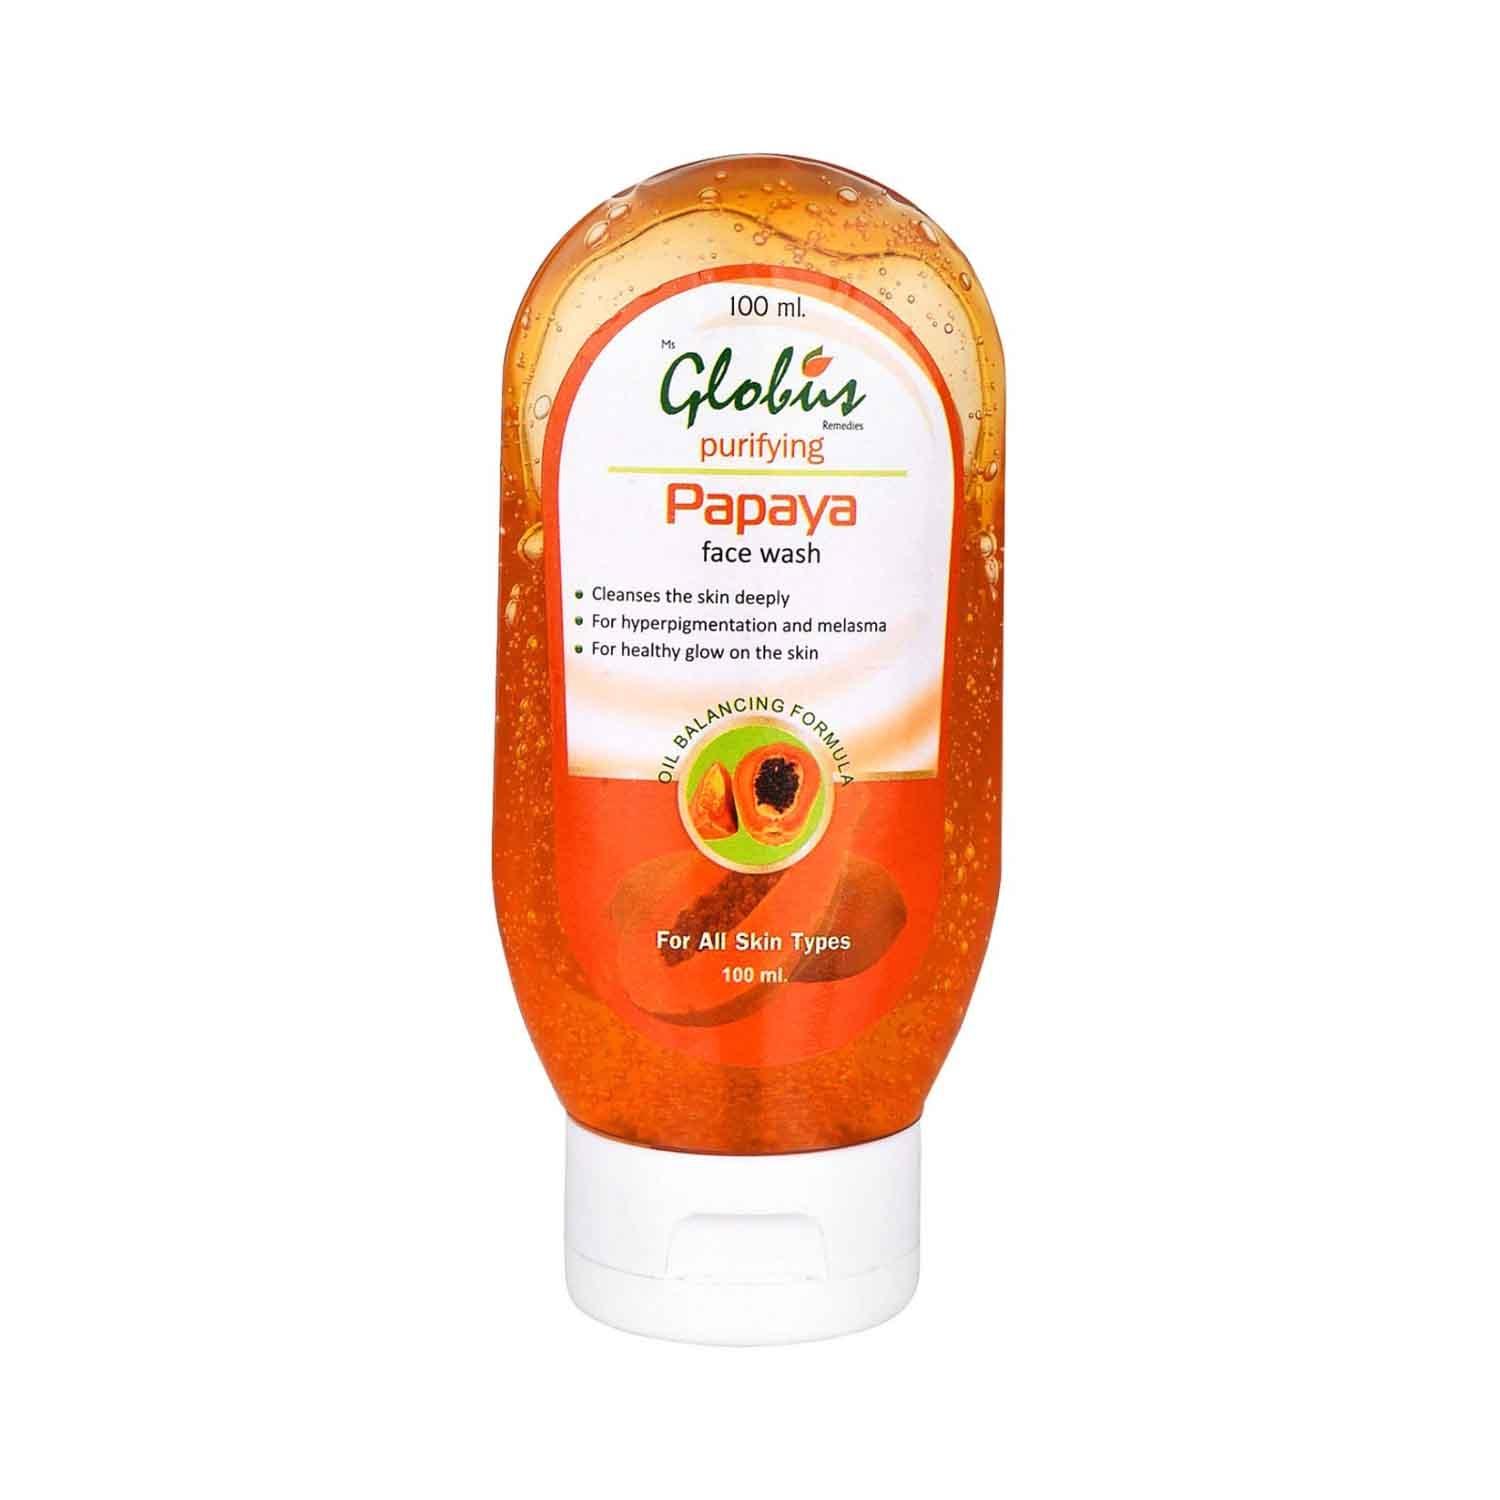 globus remedies purifying papaya face wash (100ml)